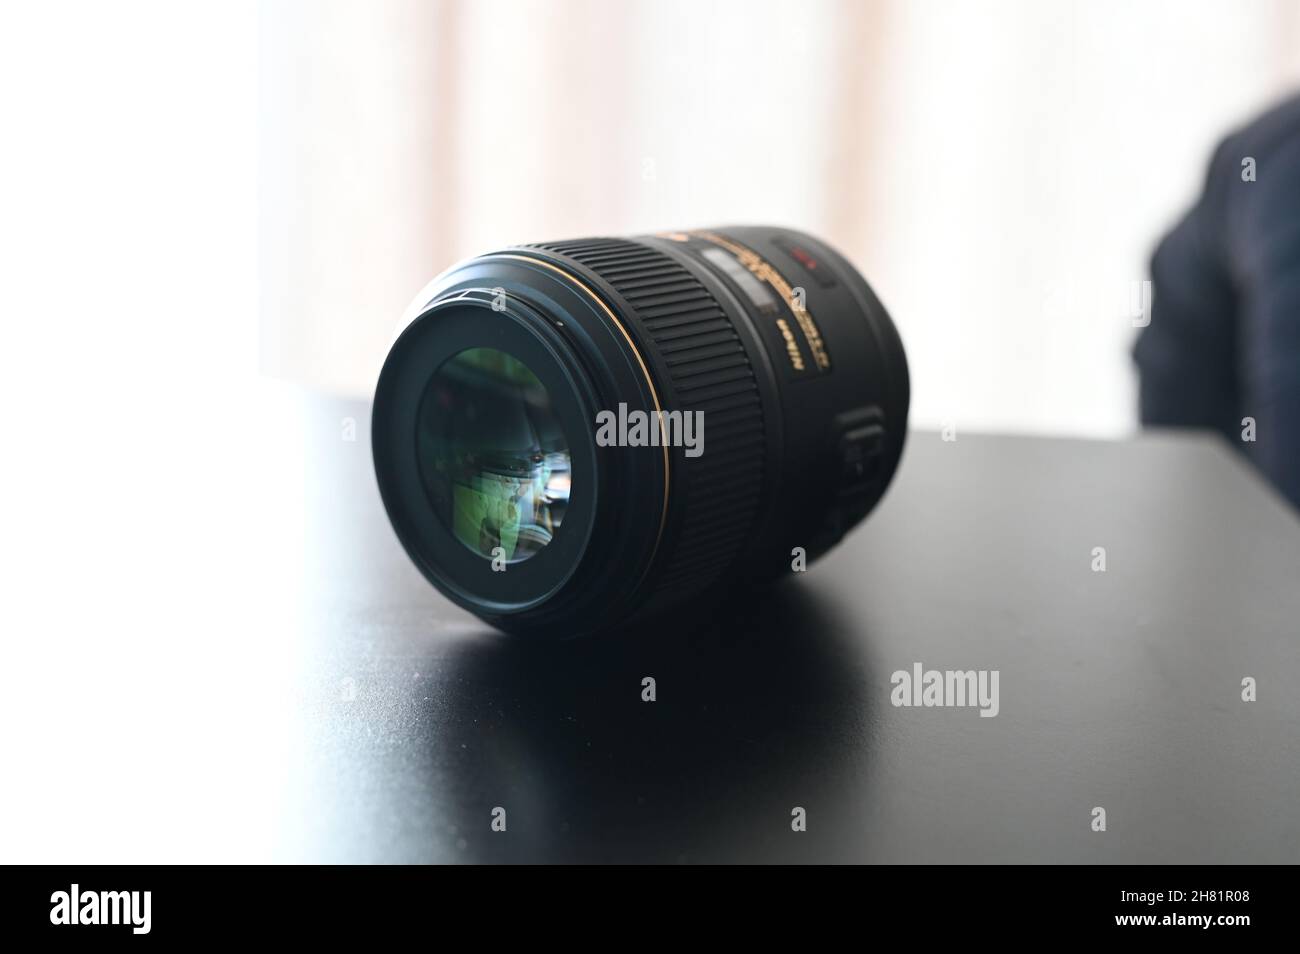 Nikon nikkor macro lens f-mount Stock Photo